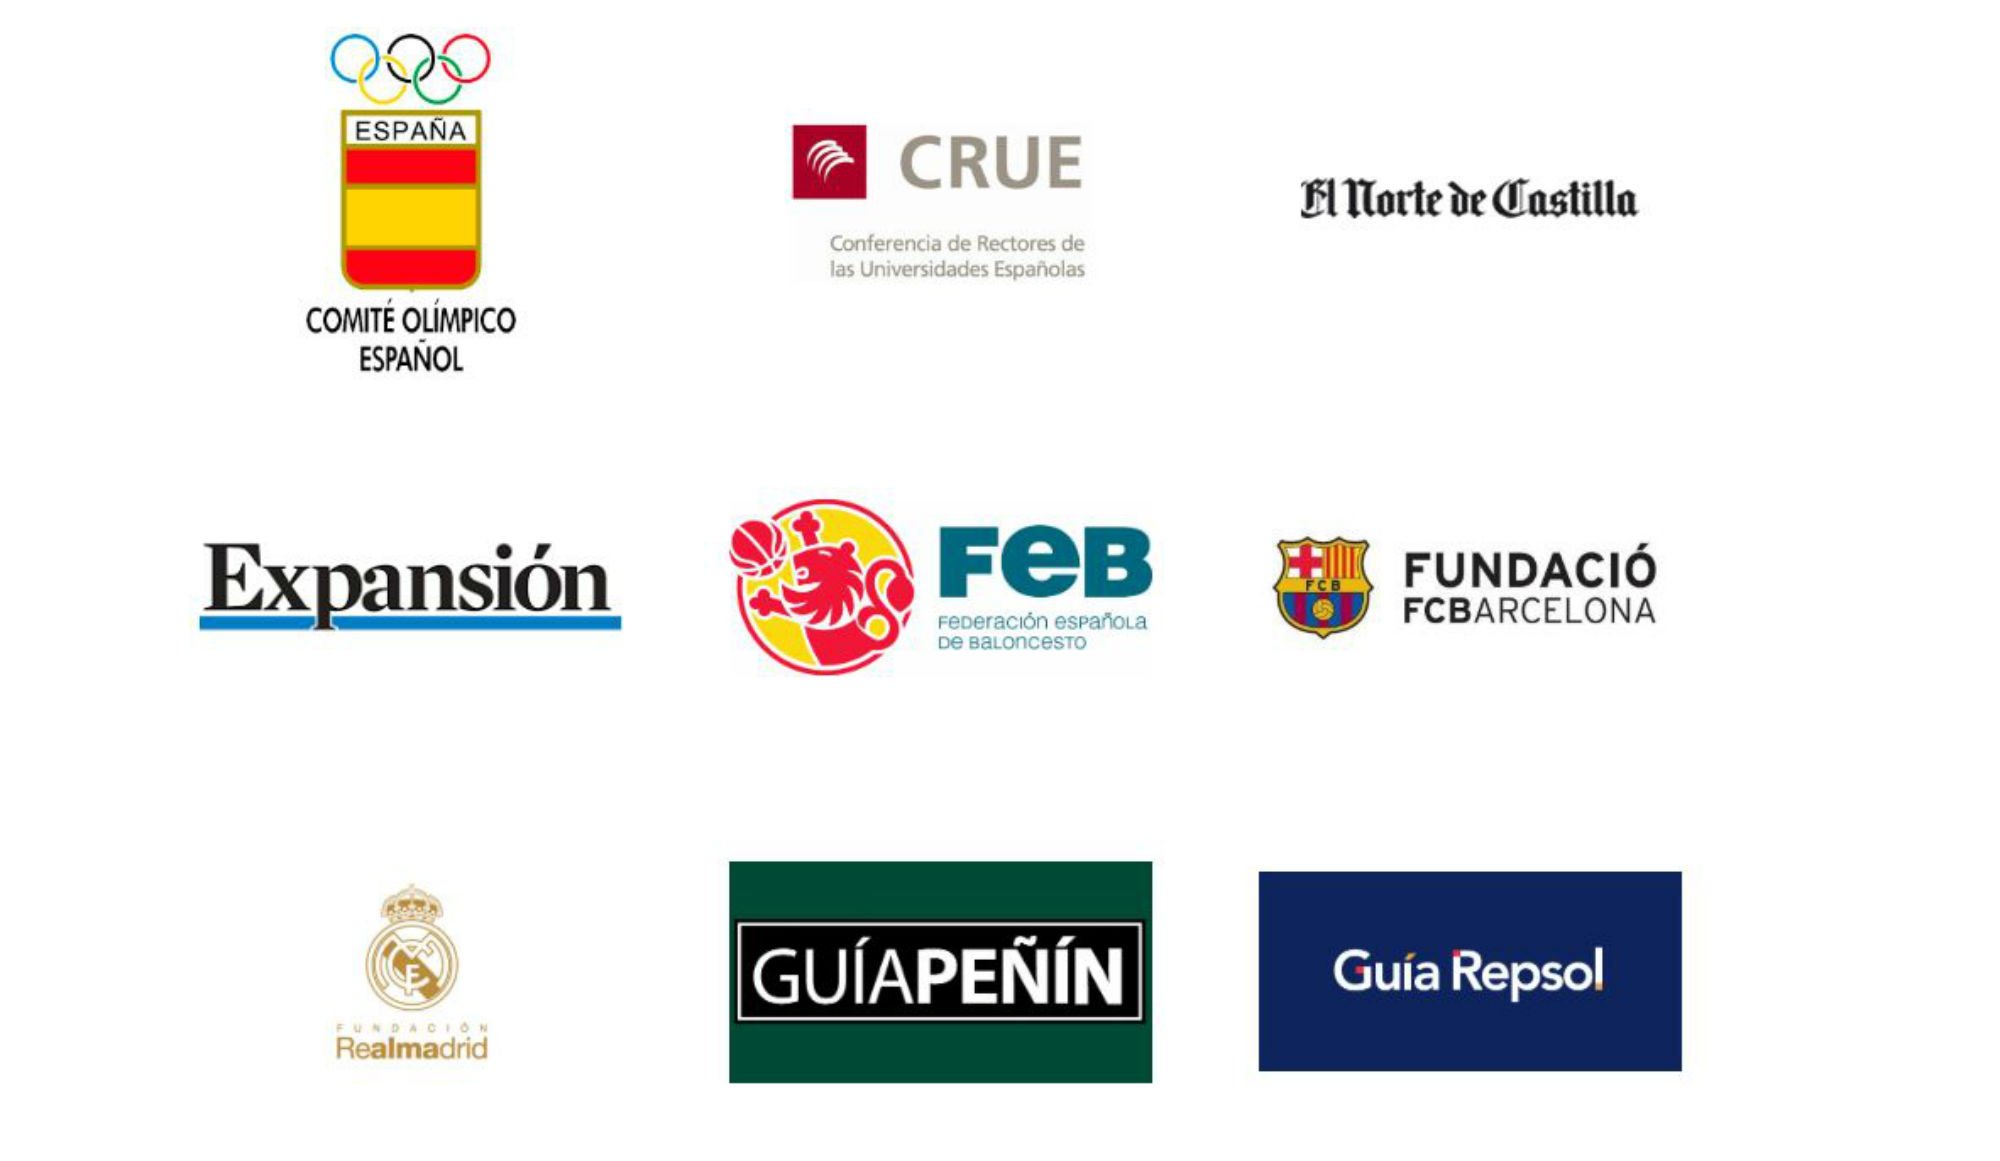 El Barça i l'Ajuntament de Barcelona es queixen que España Global els usa sense permís